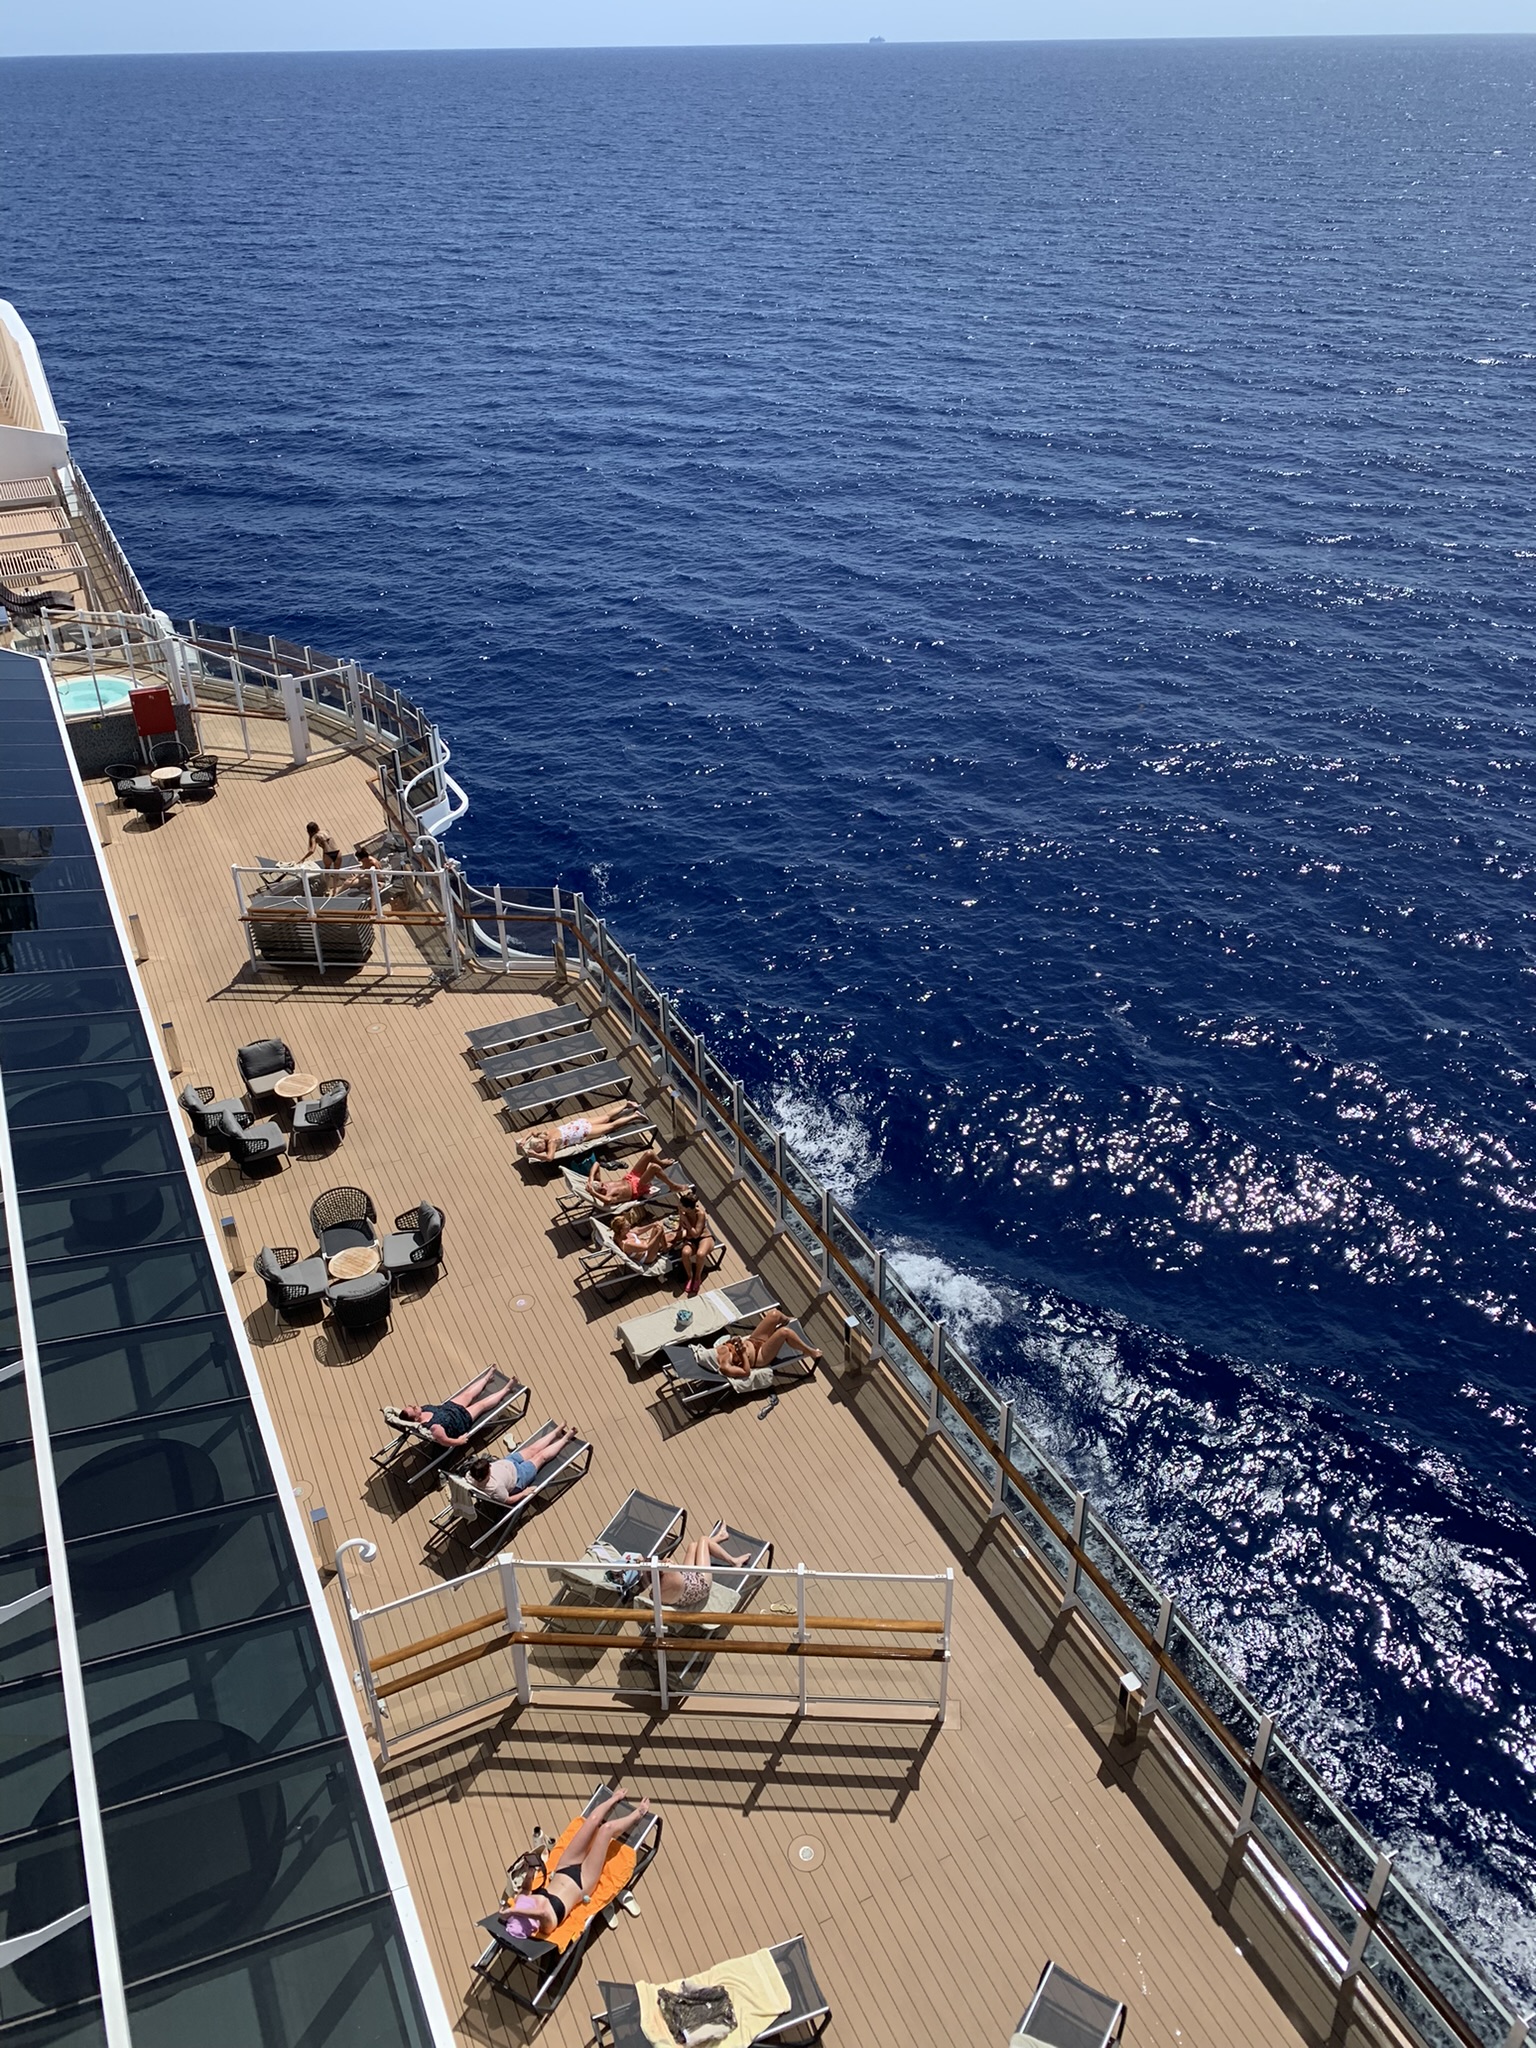 Deck com espreguiçadeiras para tomar sol ao redor do navio. Foto: Leticia Moreira / Portal iG - 28.08.2022